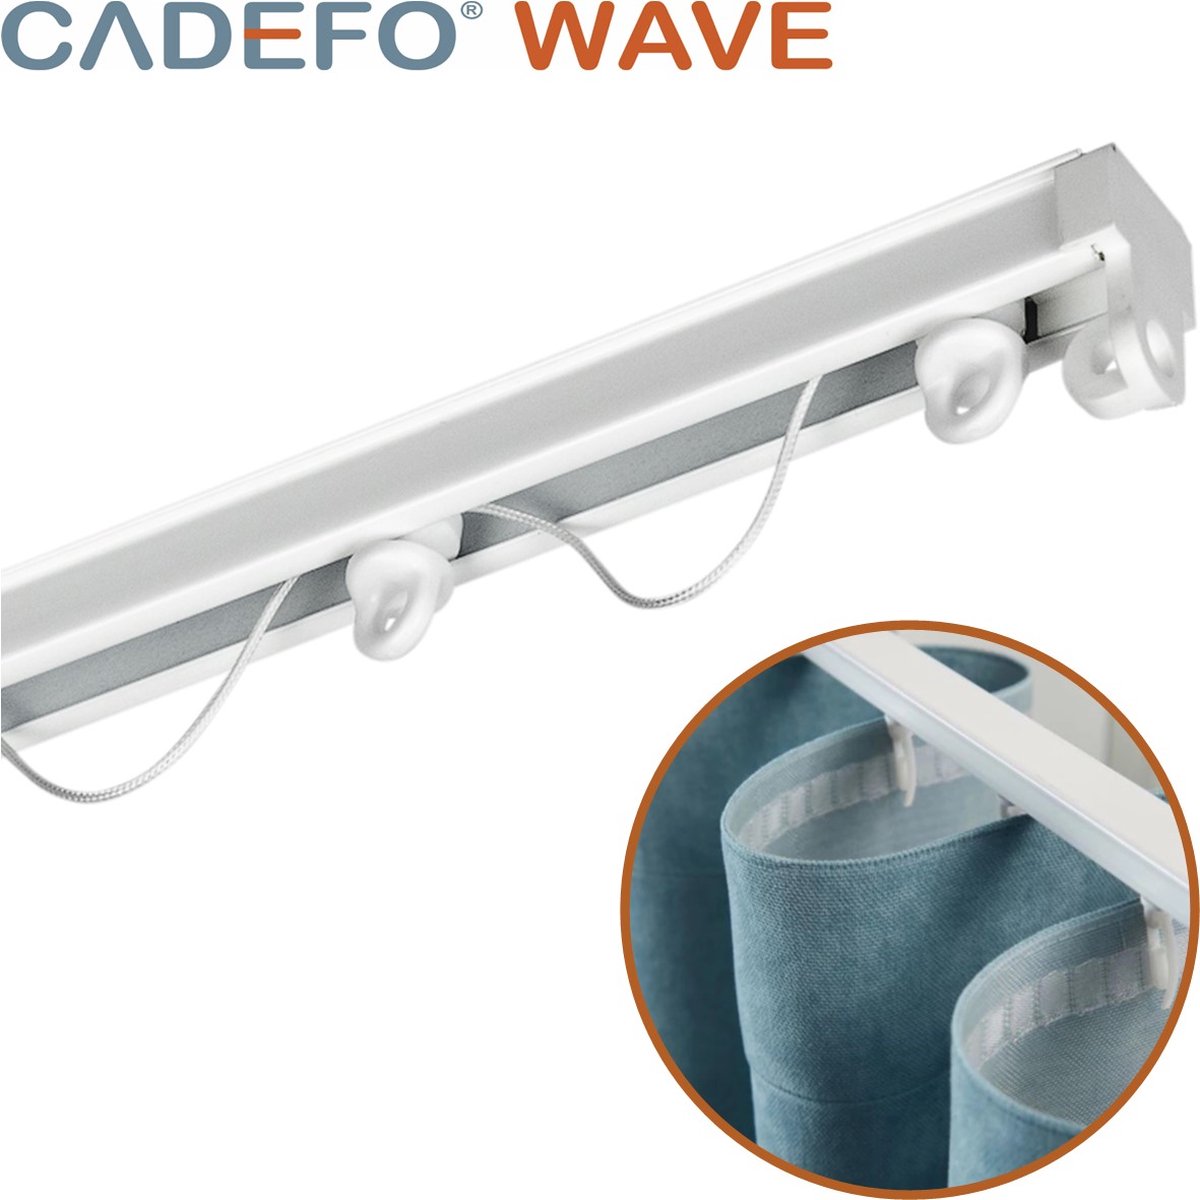 CADEFO WAVE (301 - 350 cm) Gordijnrails - Compleet op maat! - UIT 1 STUK - Leverbaar tot 6 meter - Plafondbevestiging - Lengte 325 cm